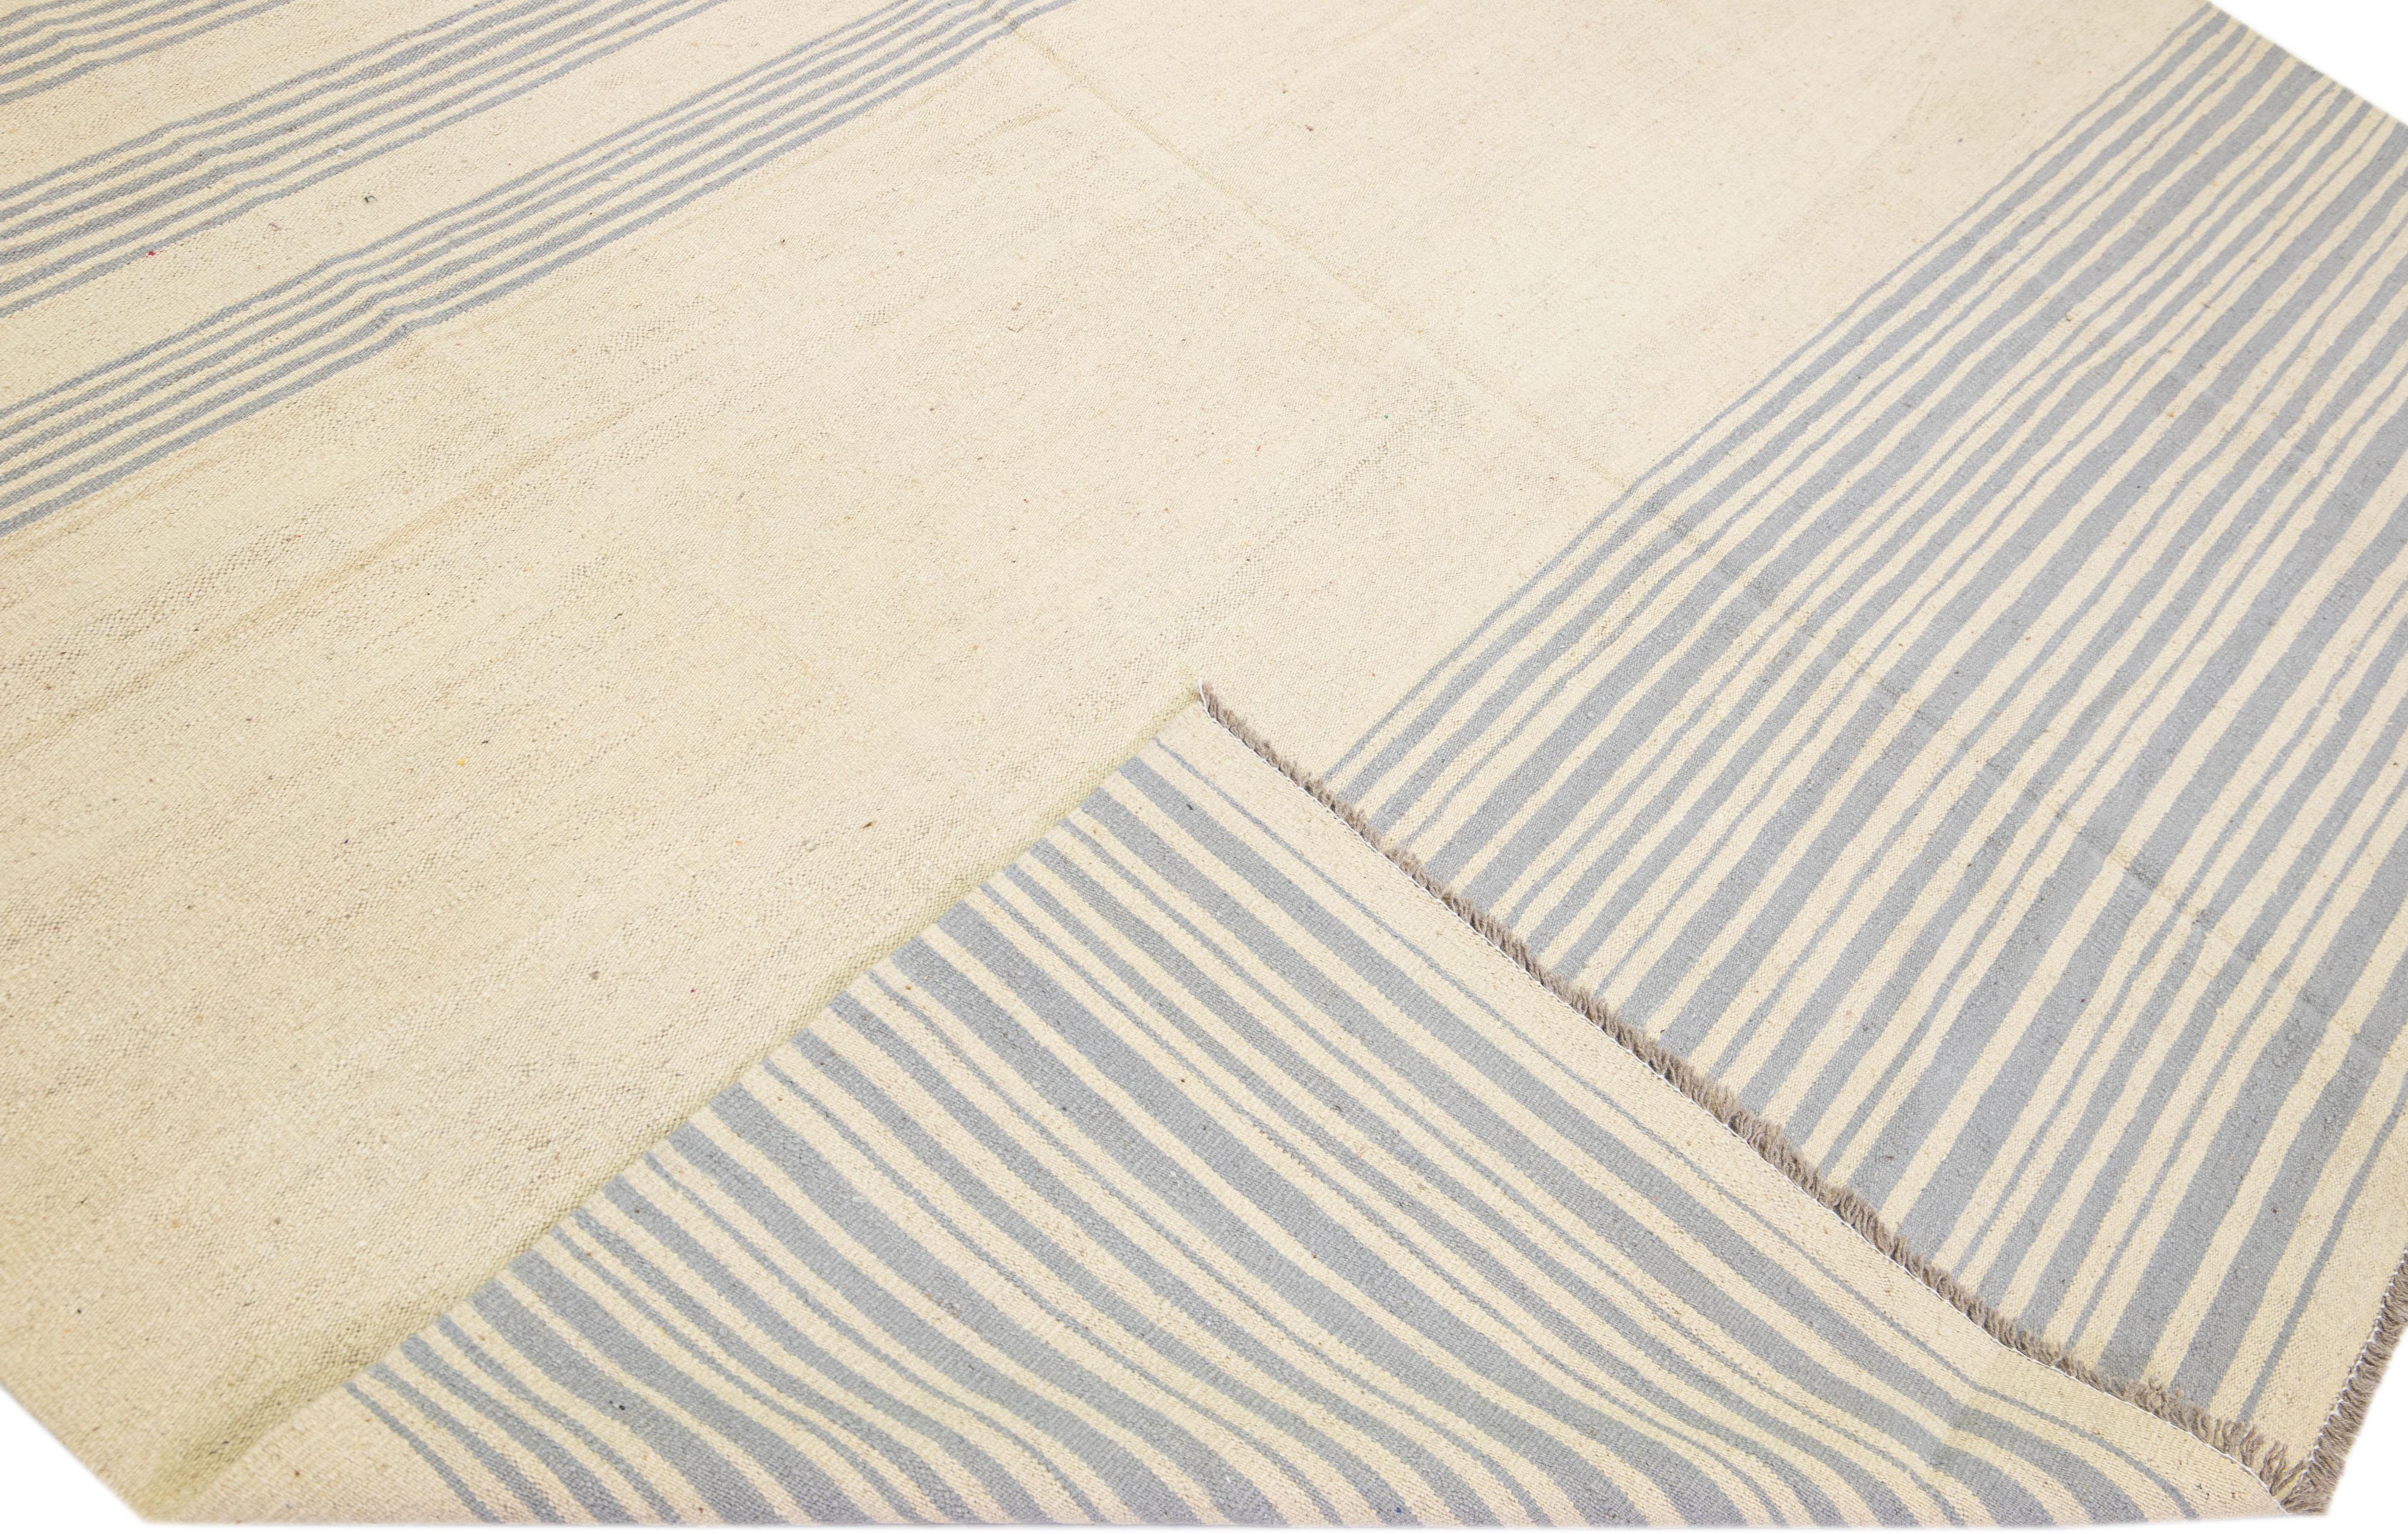 Schöner moderner flachgewebter Kilim-Teppich aus handgefertigter Wolle mit einem beigen Farbfeld. Dieser Kilim-Teppich hat graue Akzente in einem wunderschönen Streifendesign.

Dieser Teppich misst: 9'1